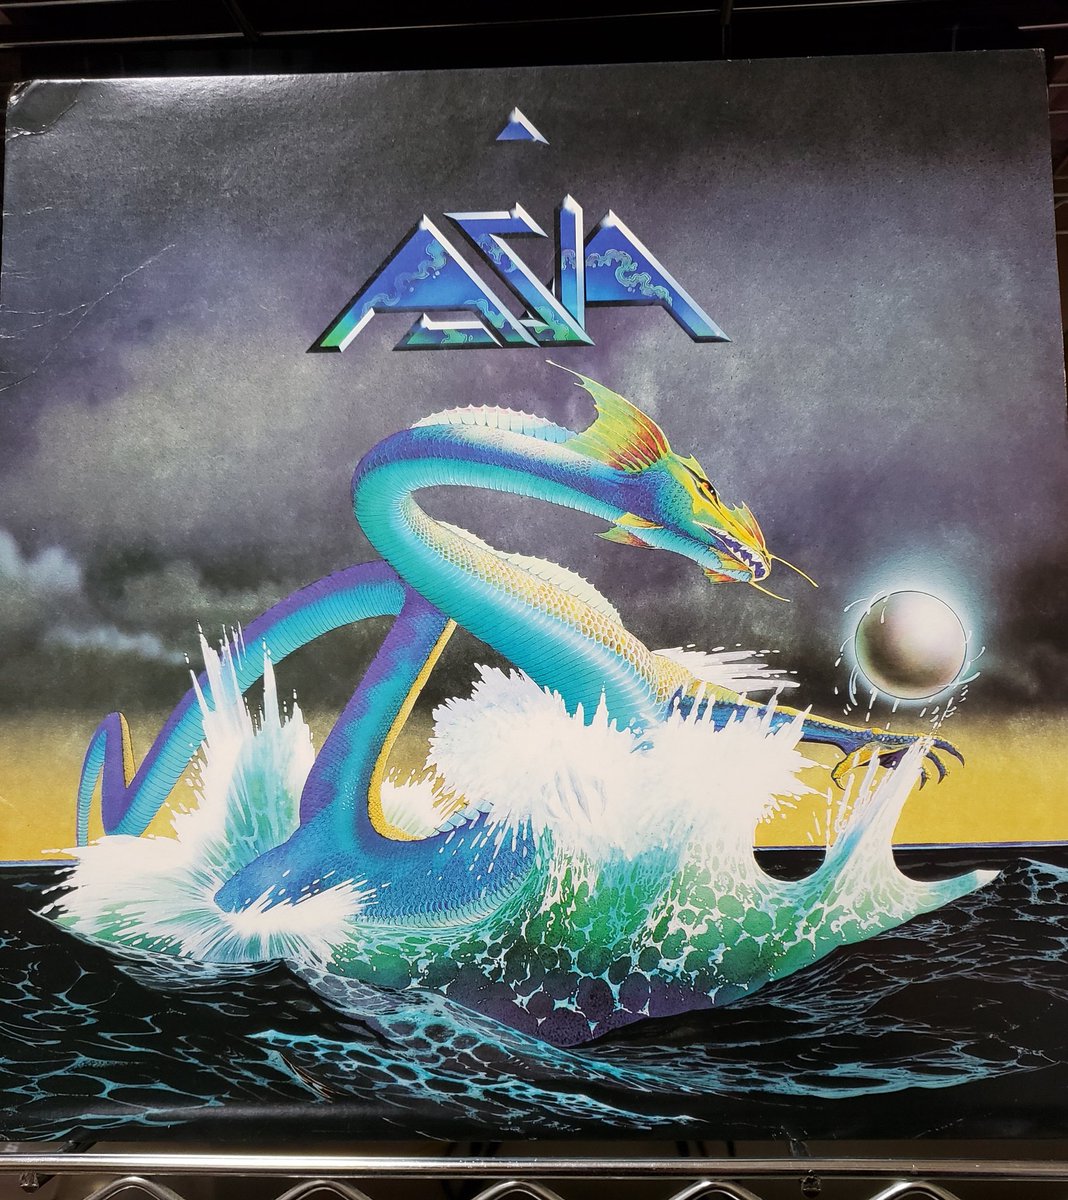 ASIA『#ASIA』邦題【詠時感〜時へのロマン】(1982年)

#エイジア の1stアルバム。言わずと知れたスーパーバンド。ジャケットは #ロジャー・ディーン。

A-1『#HEATOFTHEMOMENT』から打ちのめされる。

#ジョン・ウェットン のヴォーカルも #スティーヴ・ハウ のギターも味わい深い。

完成度が高い。